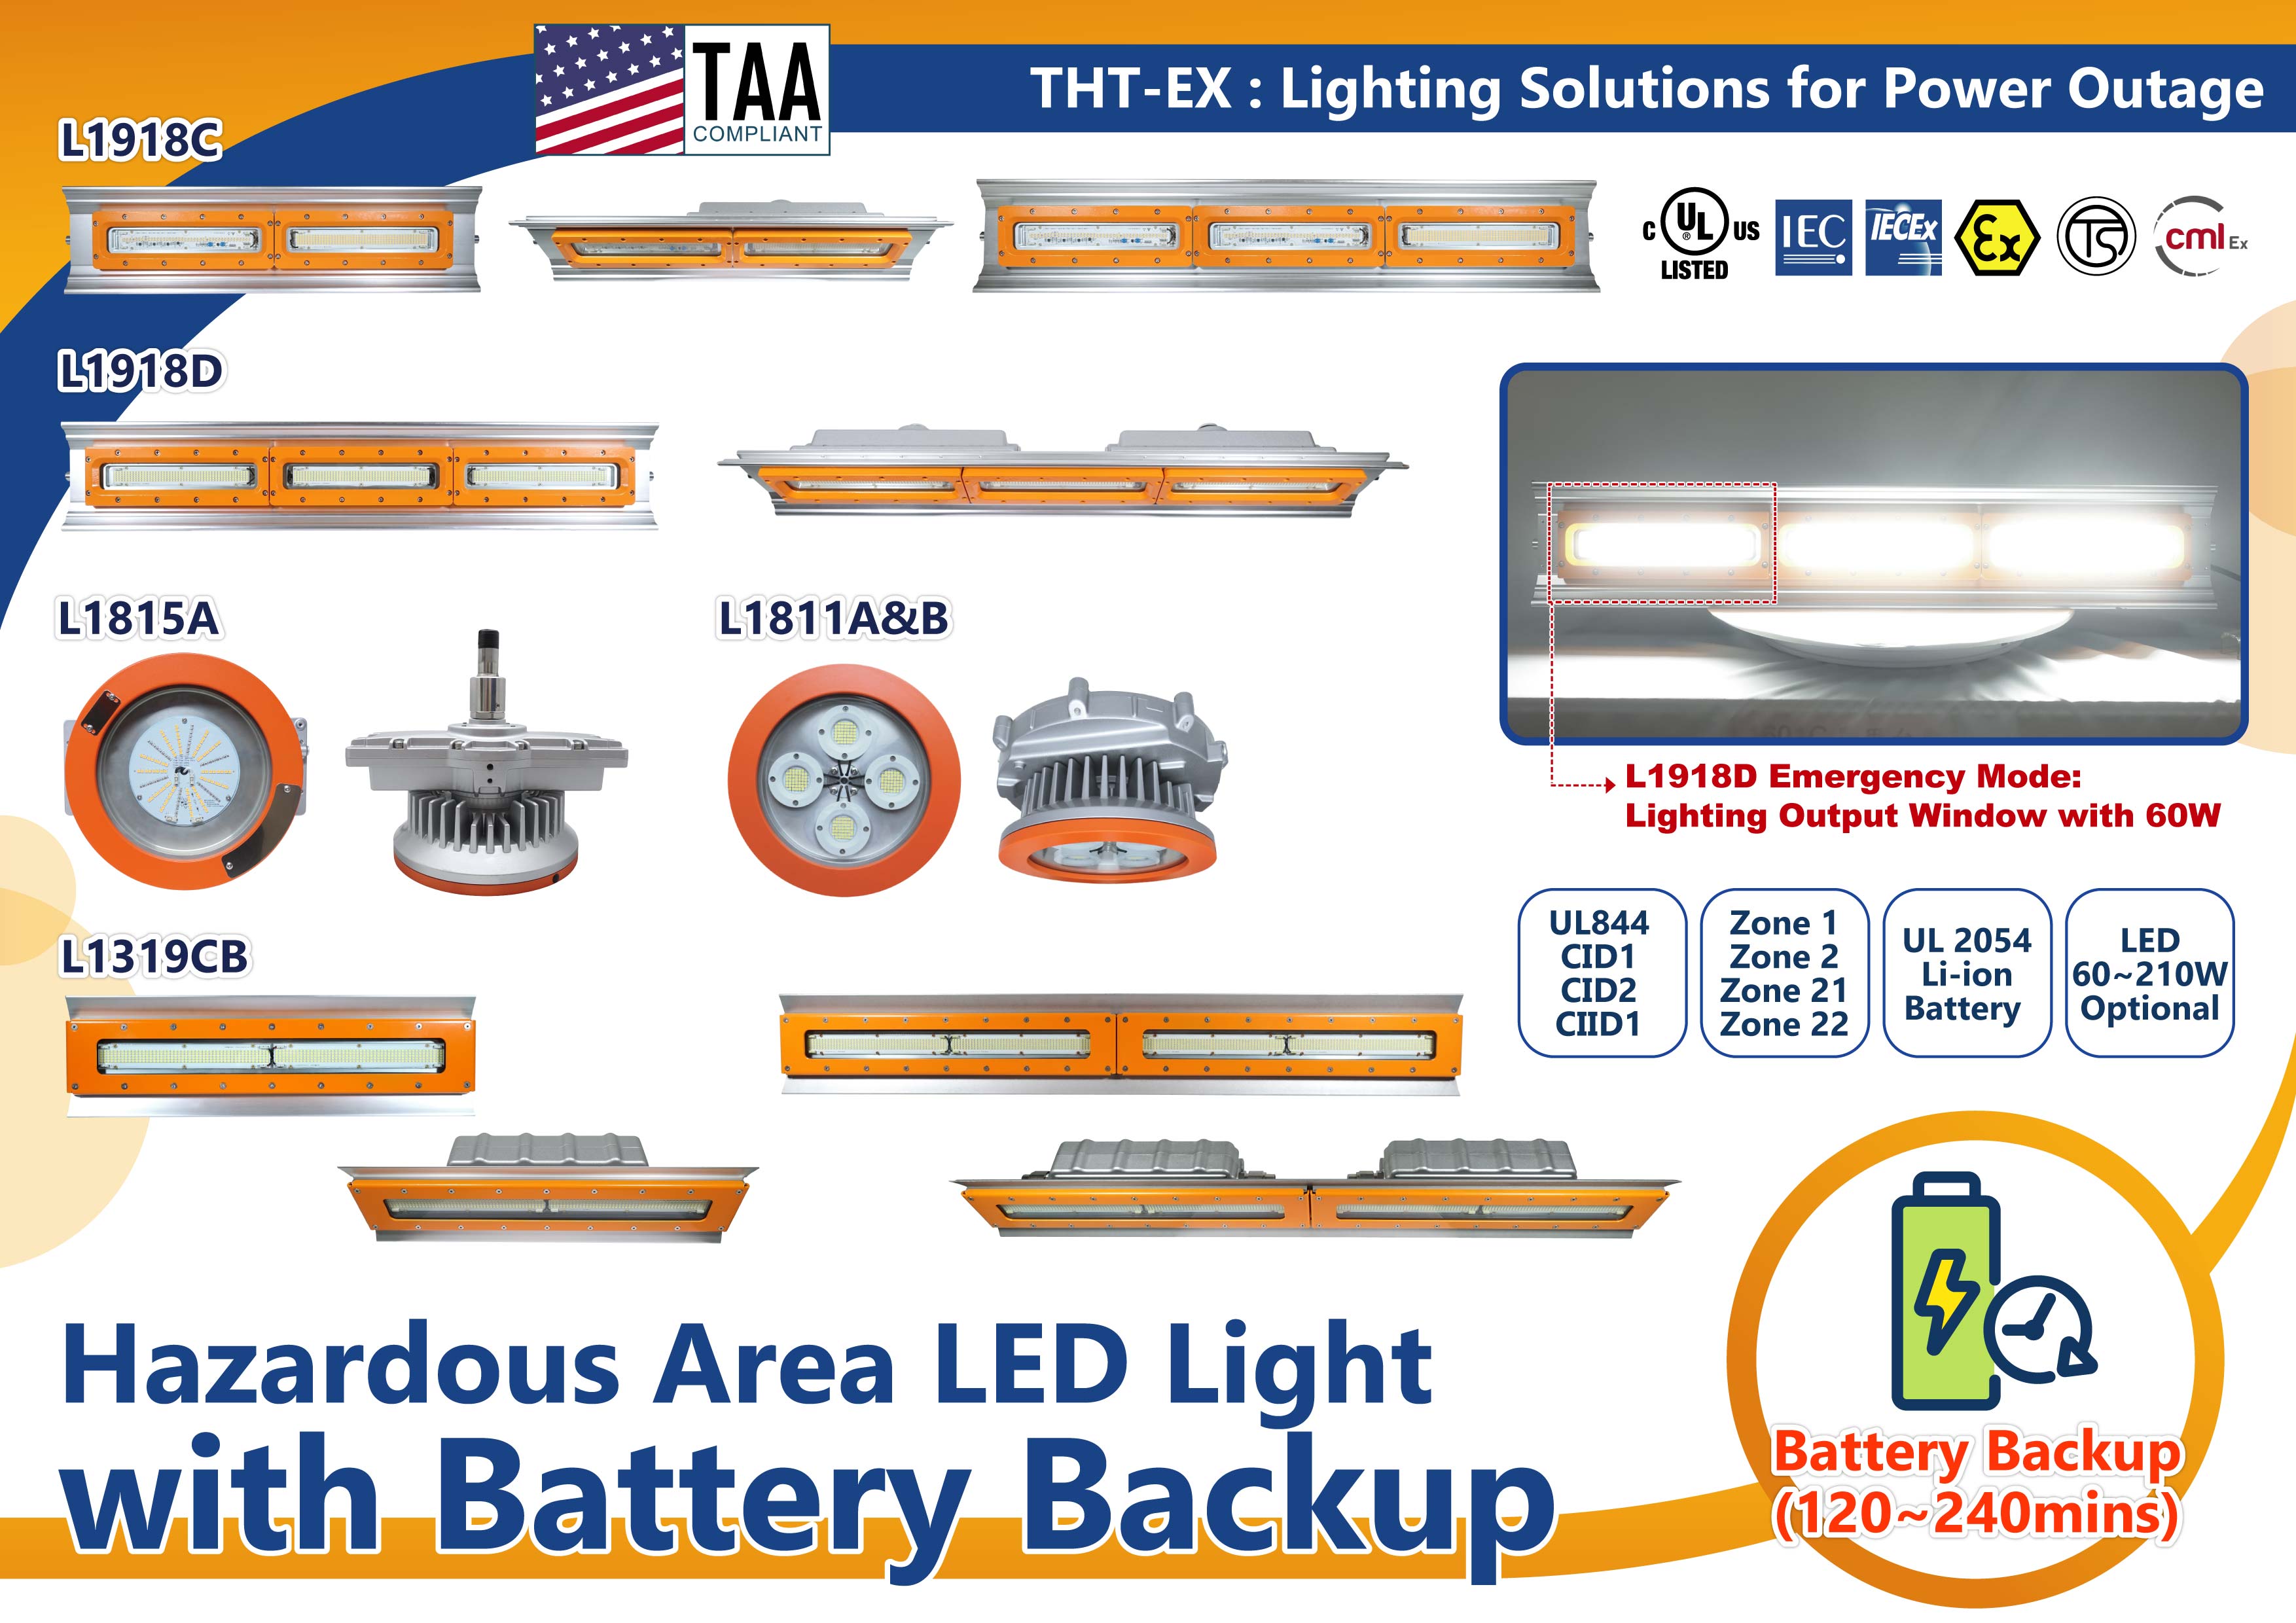 LED Explosion-Proof Lights Offer 120-240 mins of Emergency Lighting